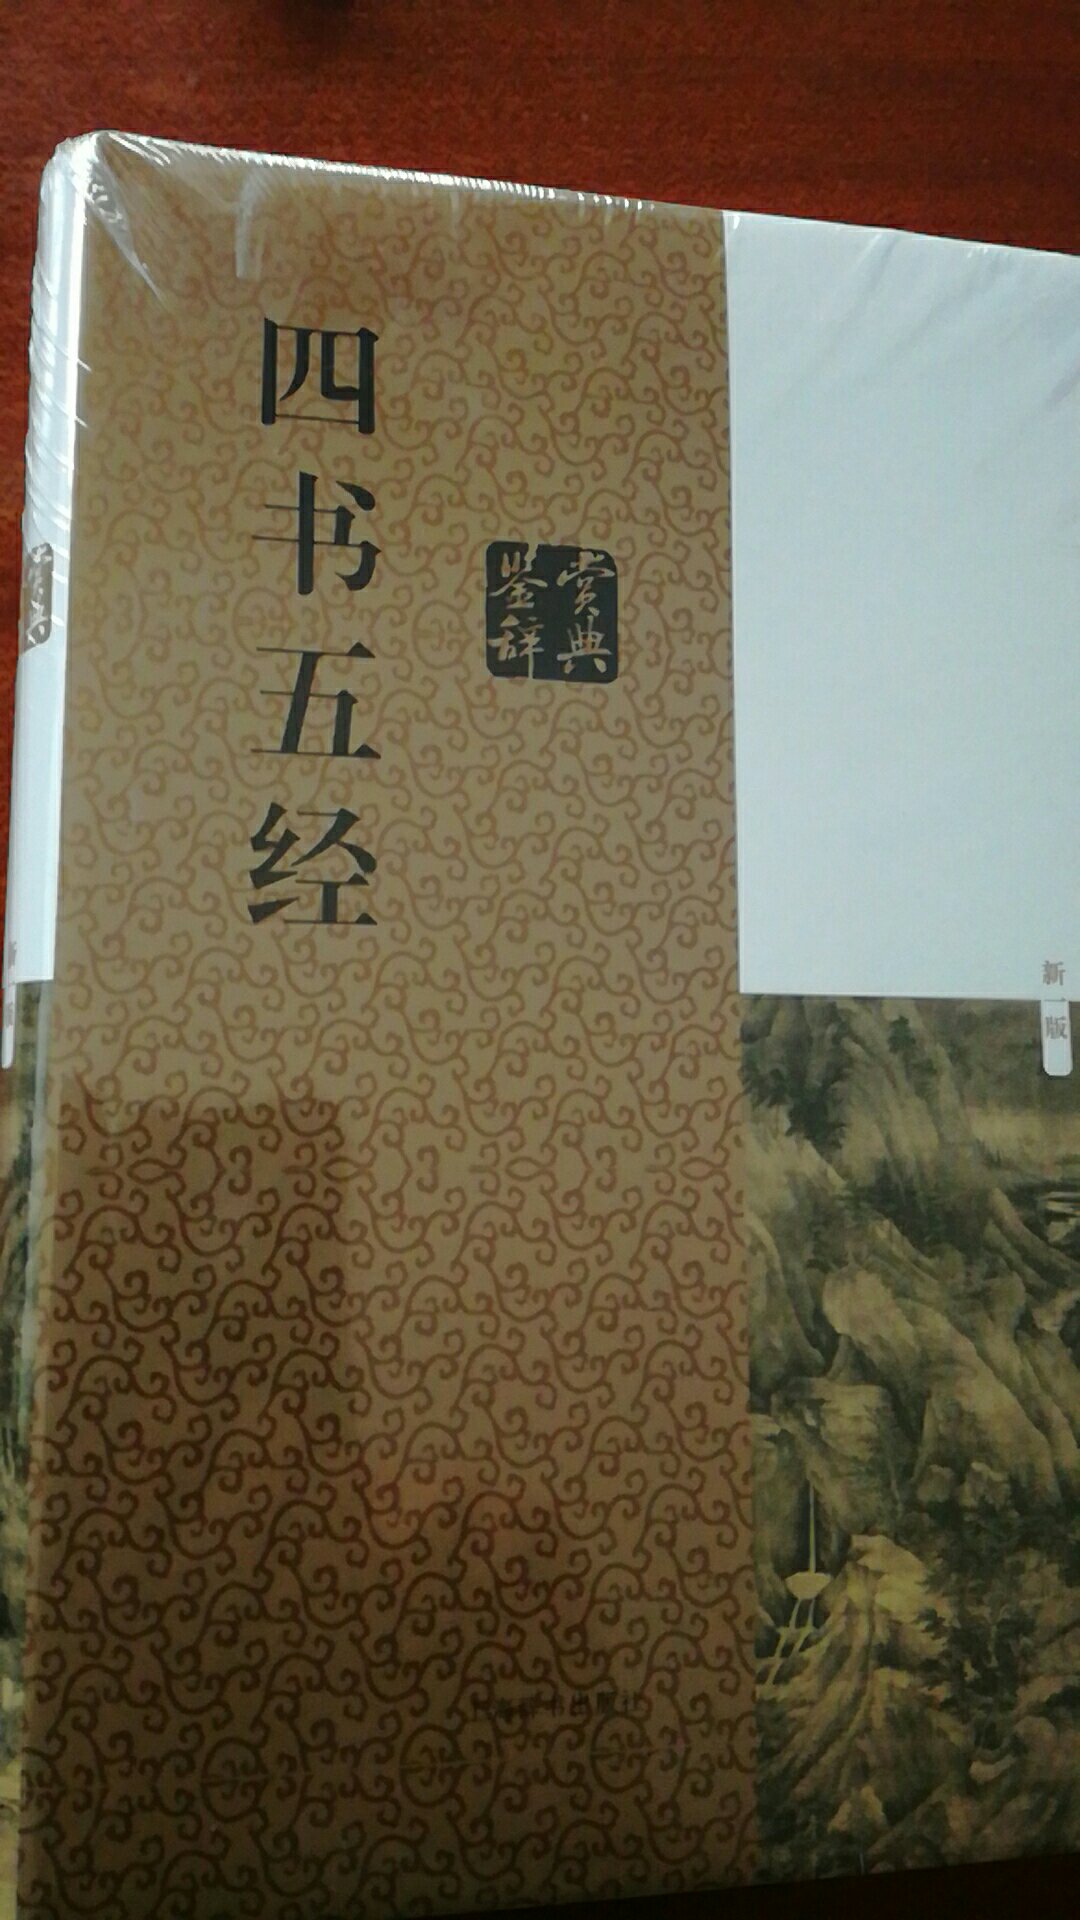 四书五经是中华文化之精华。